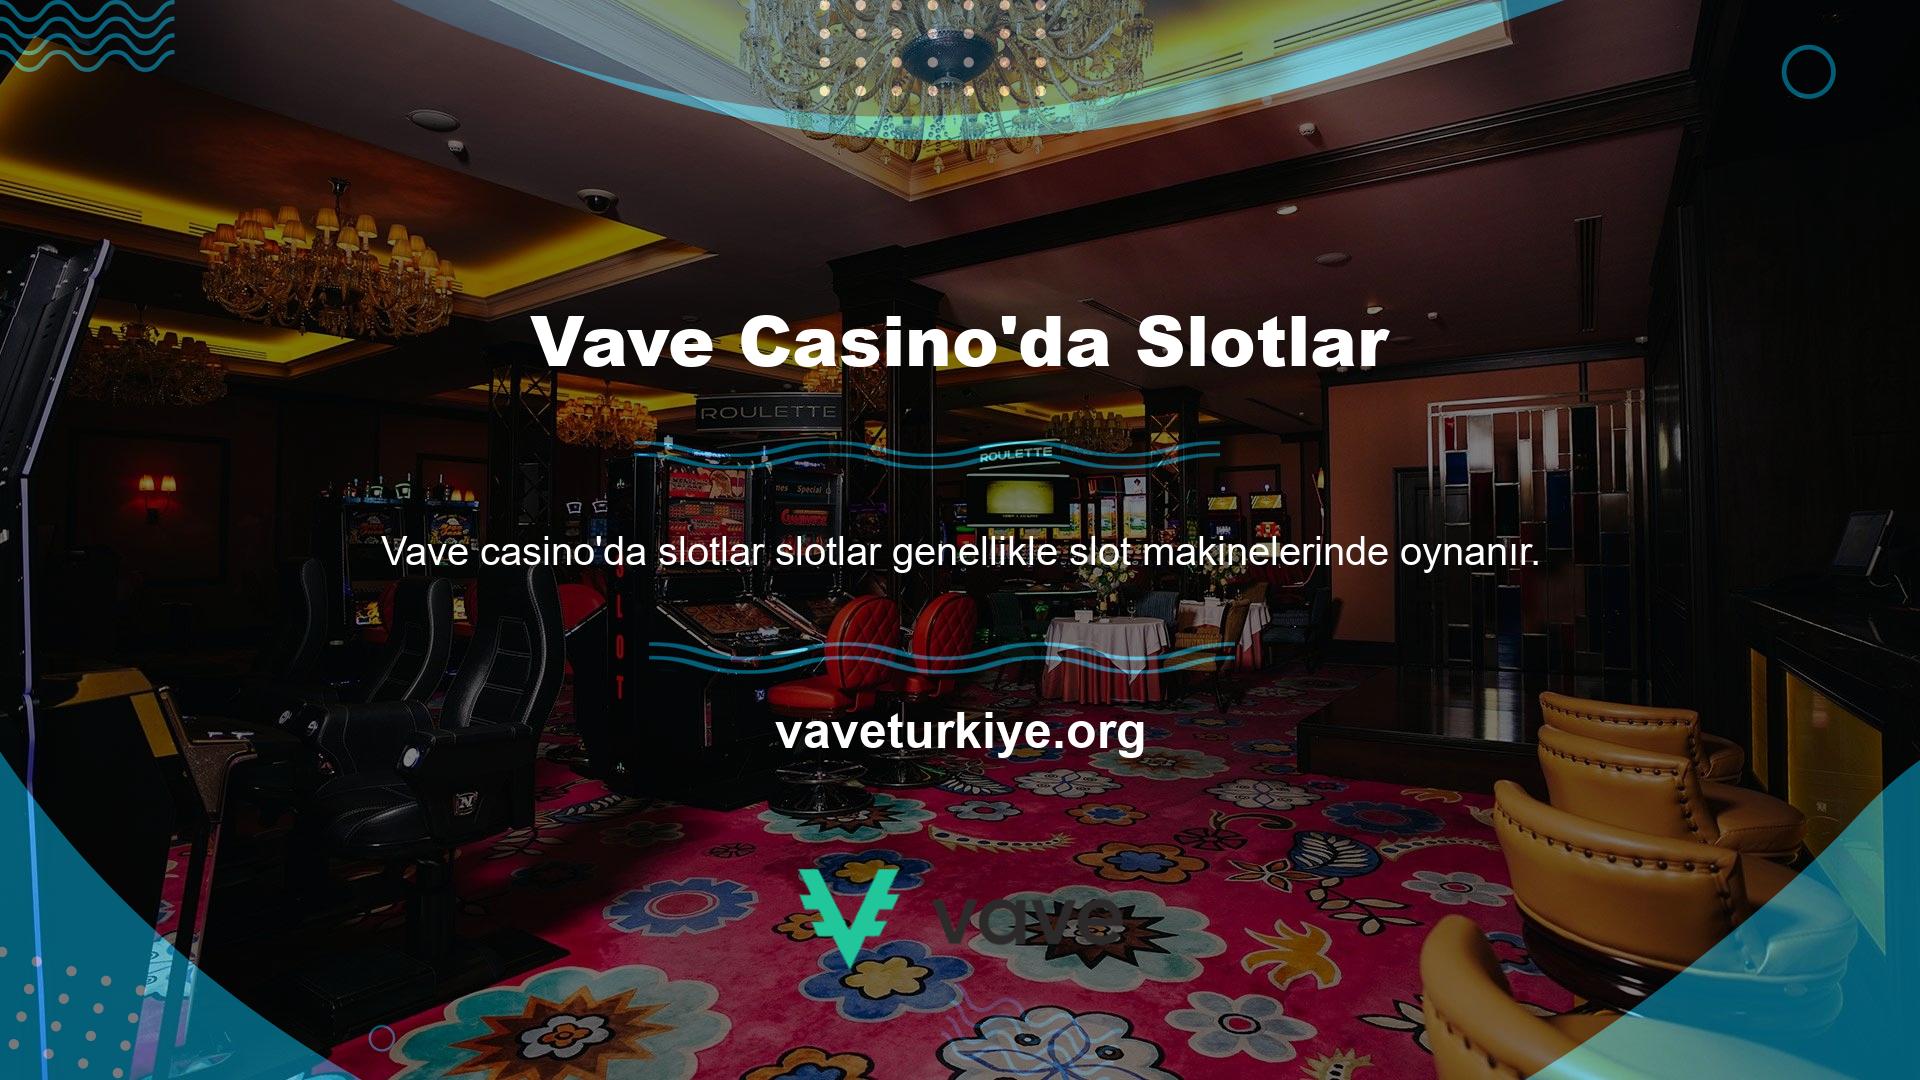 Otellerin, casinoların lobilerinde her zaman görülebilir